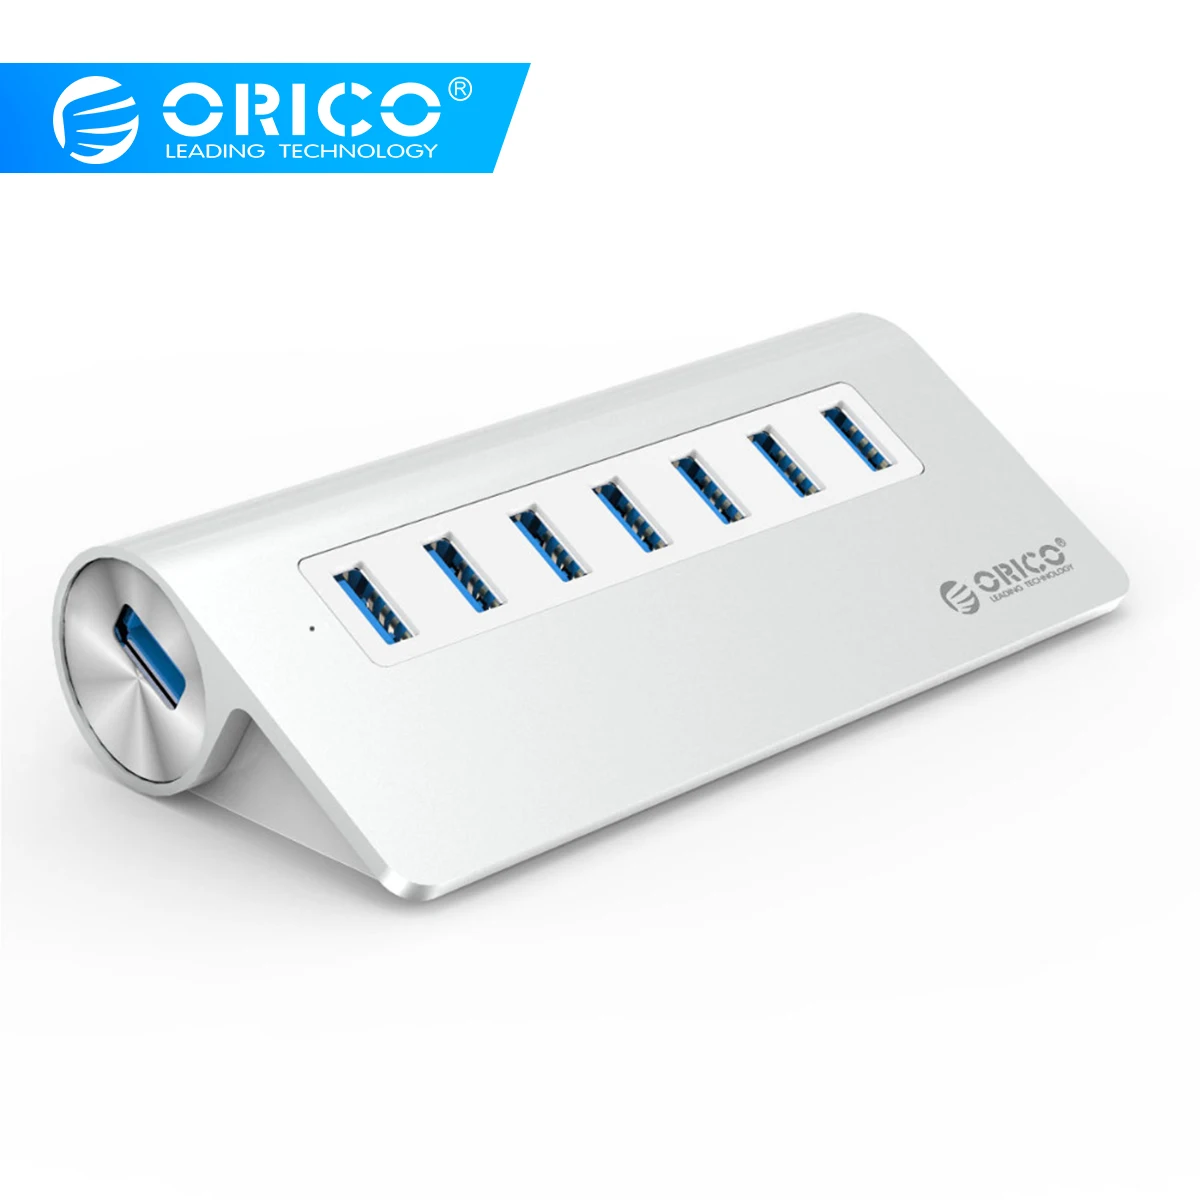 ORICO концентратор USB 3,0 Алюминий 7 Порты и разъёмы супер Скорость концентратор, украшенное мозаикой из драгоценных камней, 12V Мощность адаптер 3.3Ft. Кабель USB3.0 для ноутбука iMac MacBook